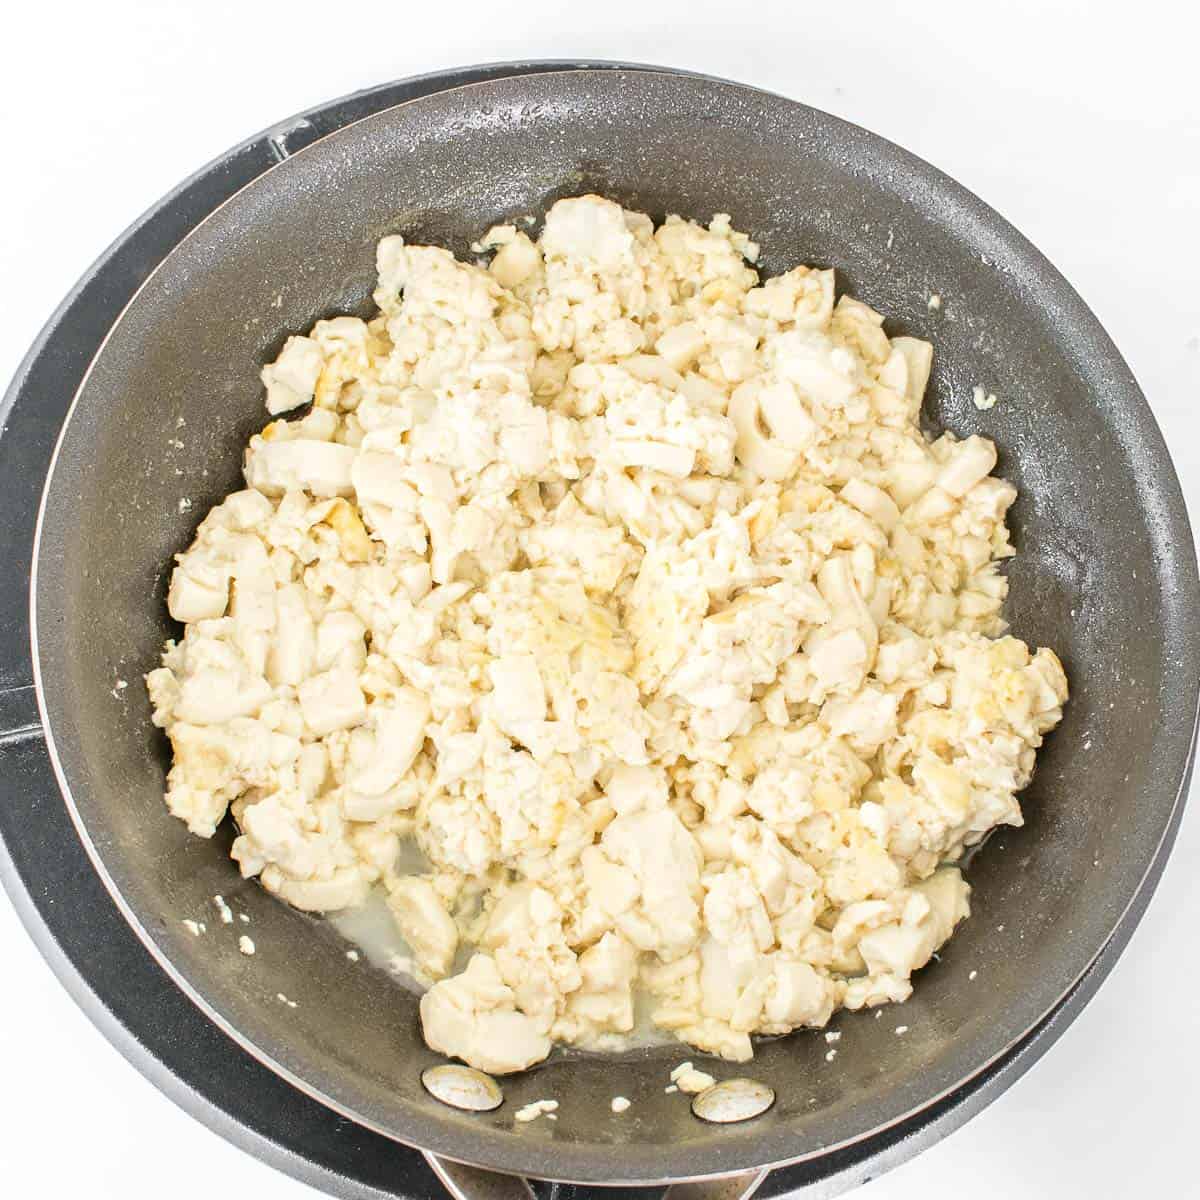 sauteed silken tofu in a pan. 